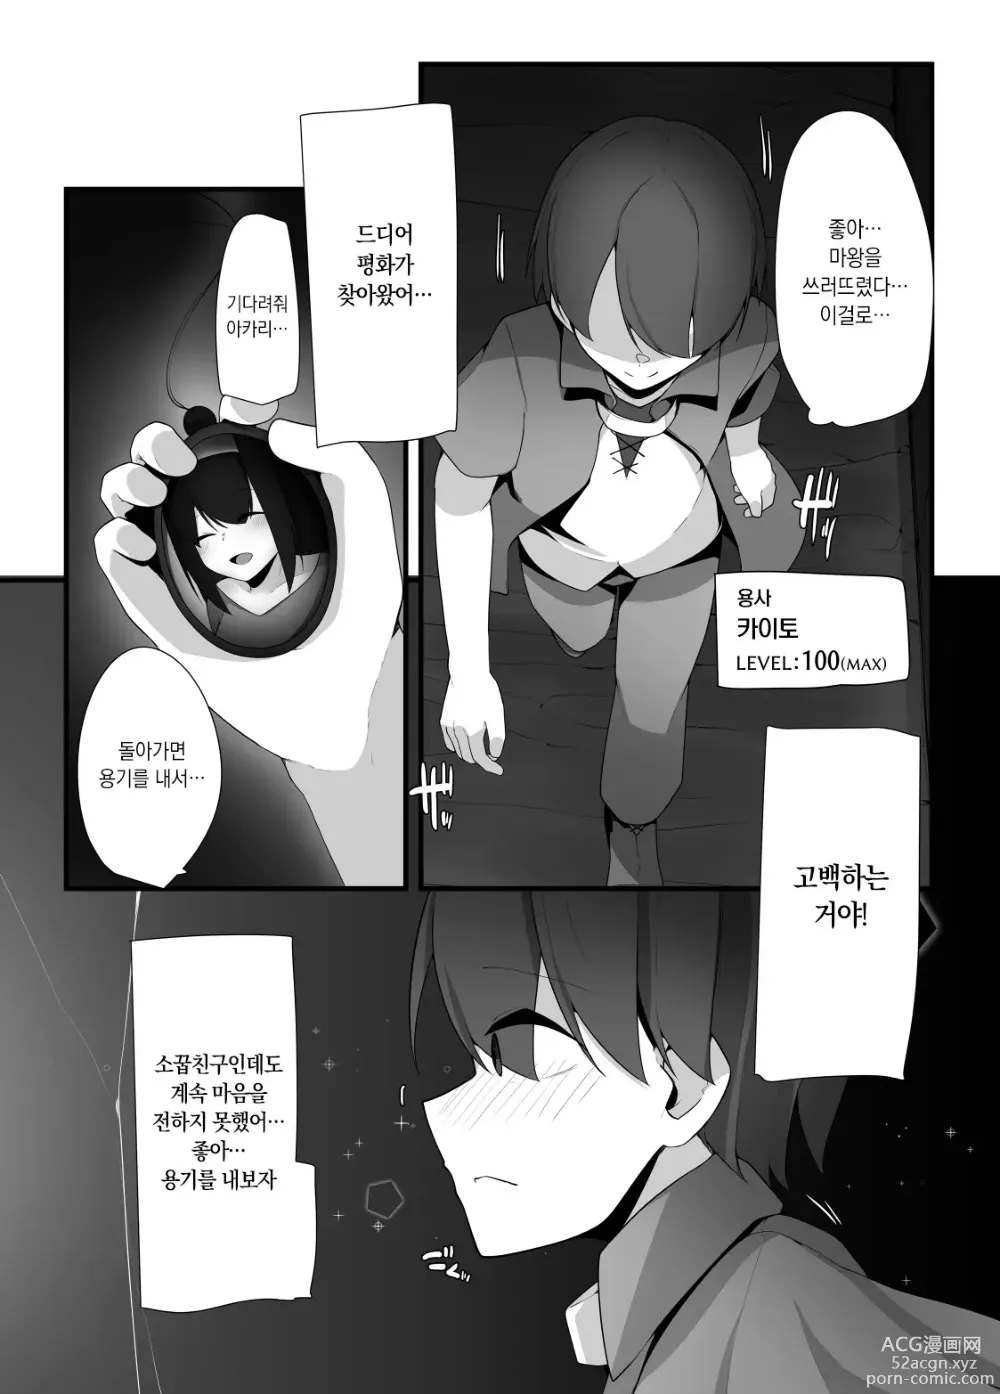 Page 2 of doujinshi 서큐버스 언니가 쇼타용사의 몸도 마음도 전부 범하는 이야기